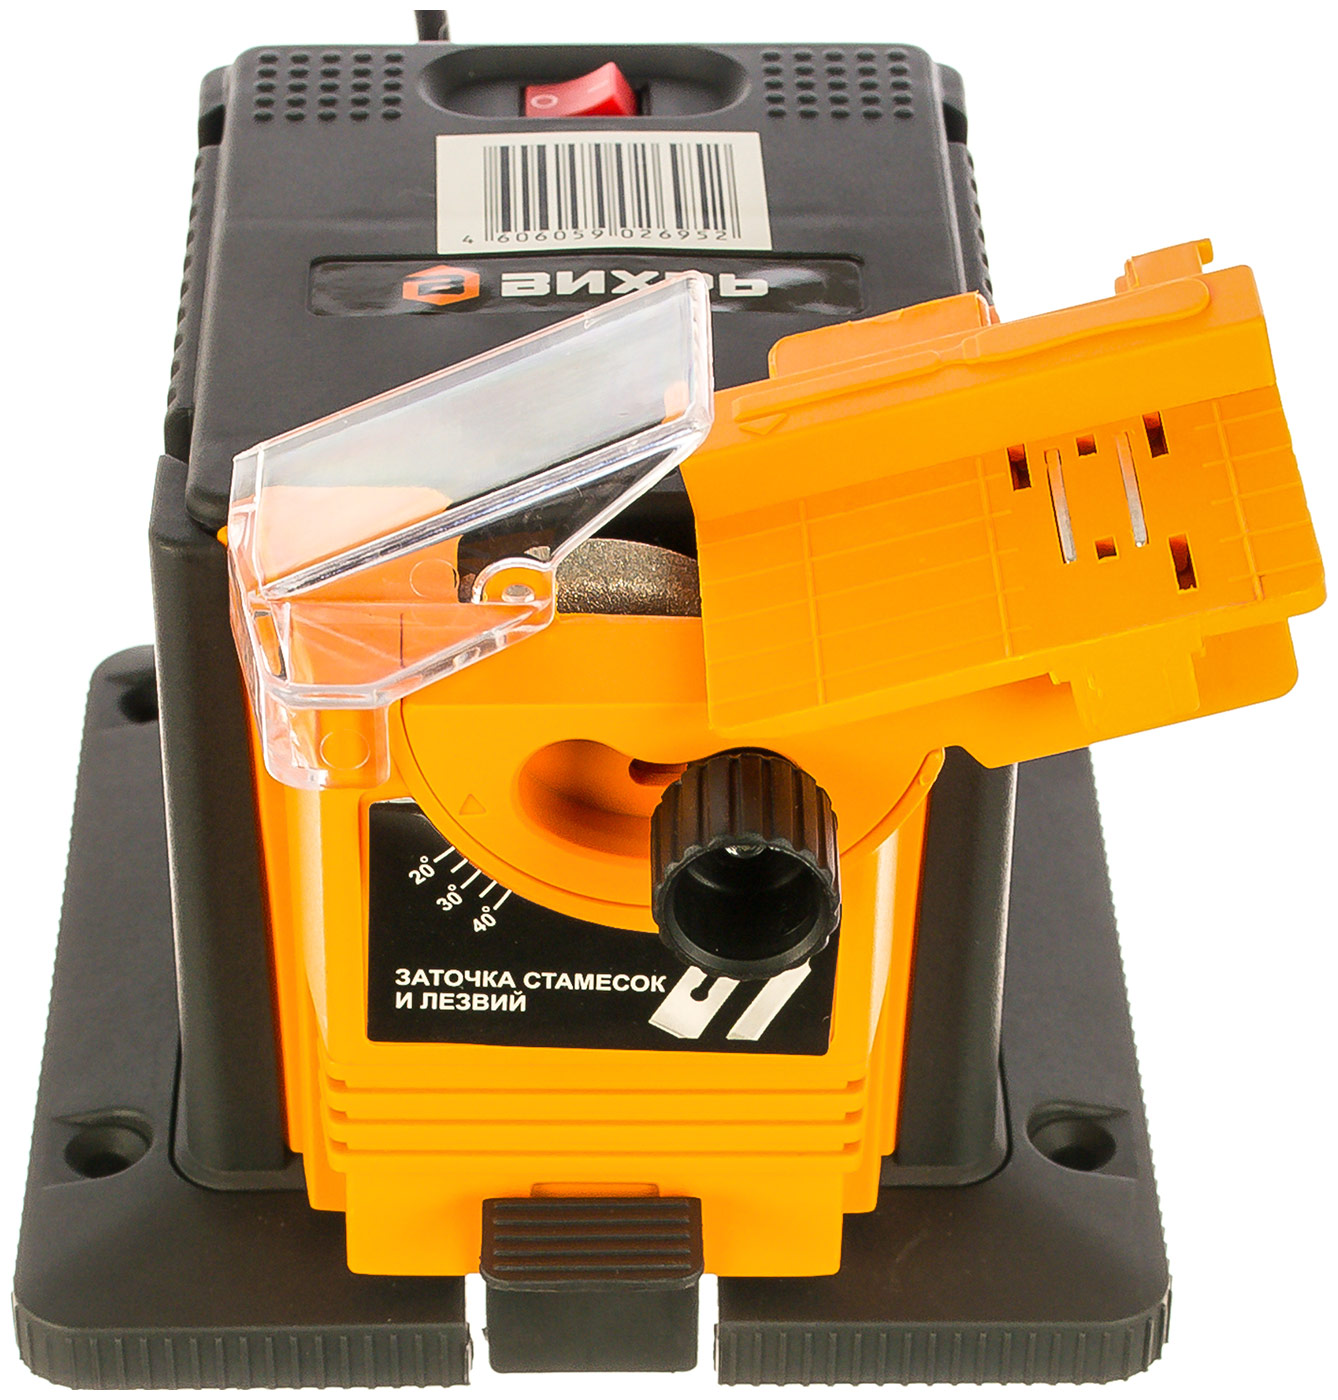 Станок заточный Вихрь СЗМ-65 оранжевый шлифовальный станок для сверл mr20g mrcm брендовая точилка для сверл шлифовальный станок с диапазоном от 2 до 20 мм заточка сверл для продажи